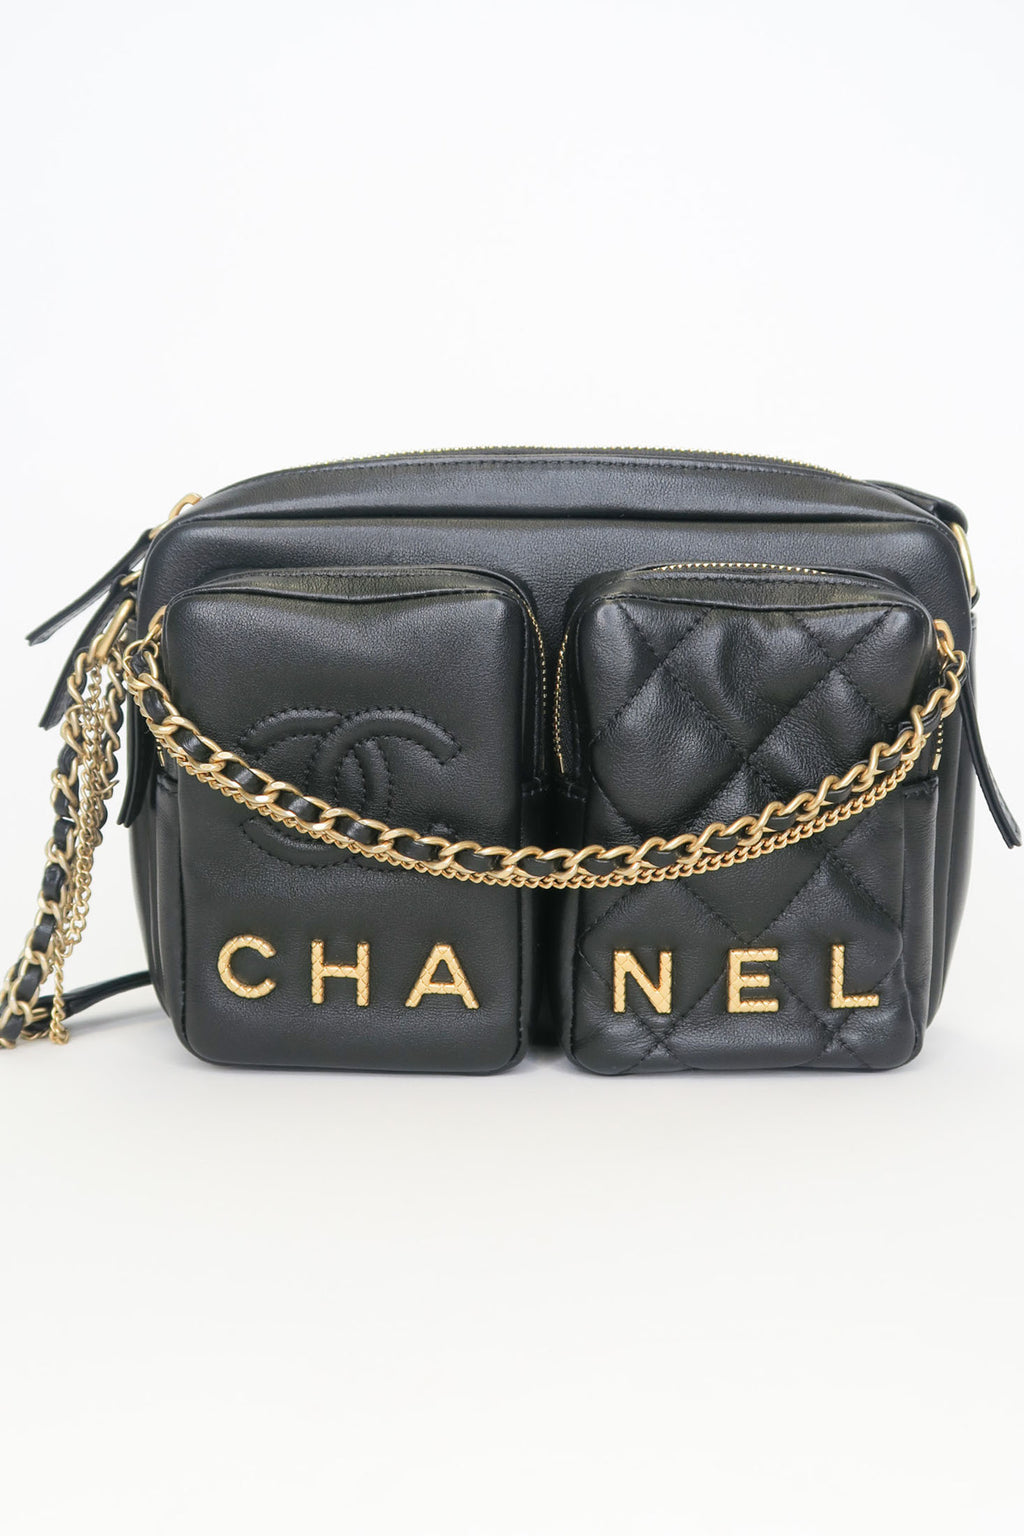 Chanel 2022 Small Camera Bag – The Find Studio